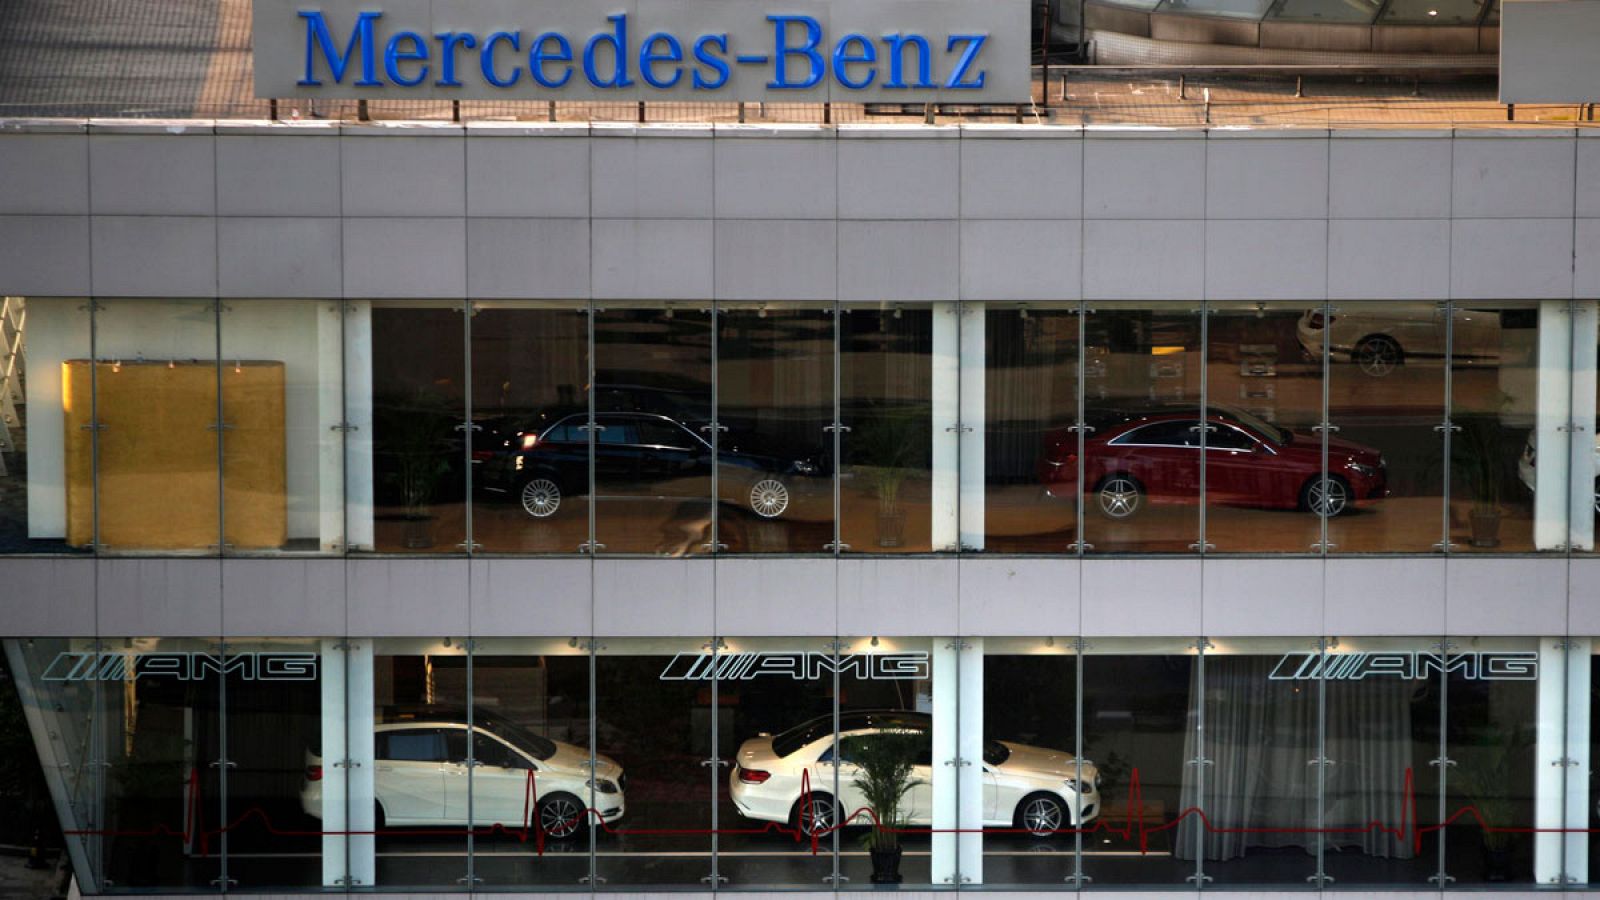 Concesionario de venta de vehículos Mercedes Benz en la ciudad china de Shanghai